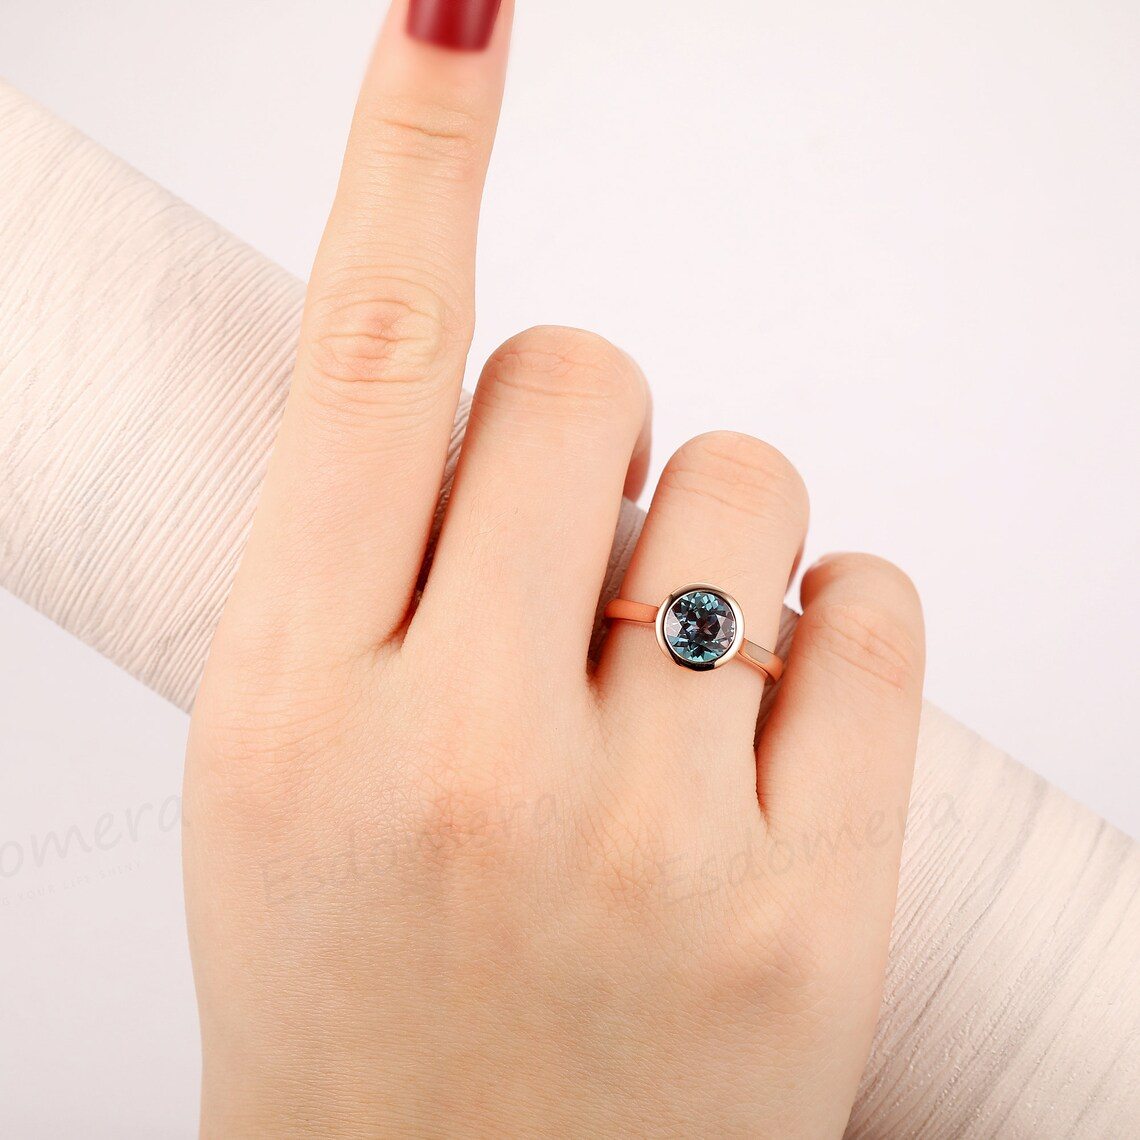 Round Cut 1.5CT Alexandrite Wedding Ring, 14k Rose Gold Engagement Ring